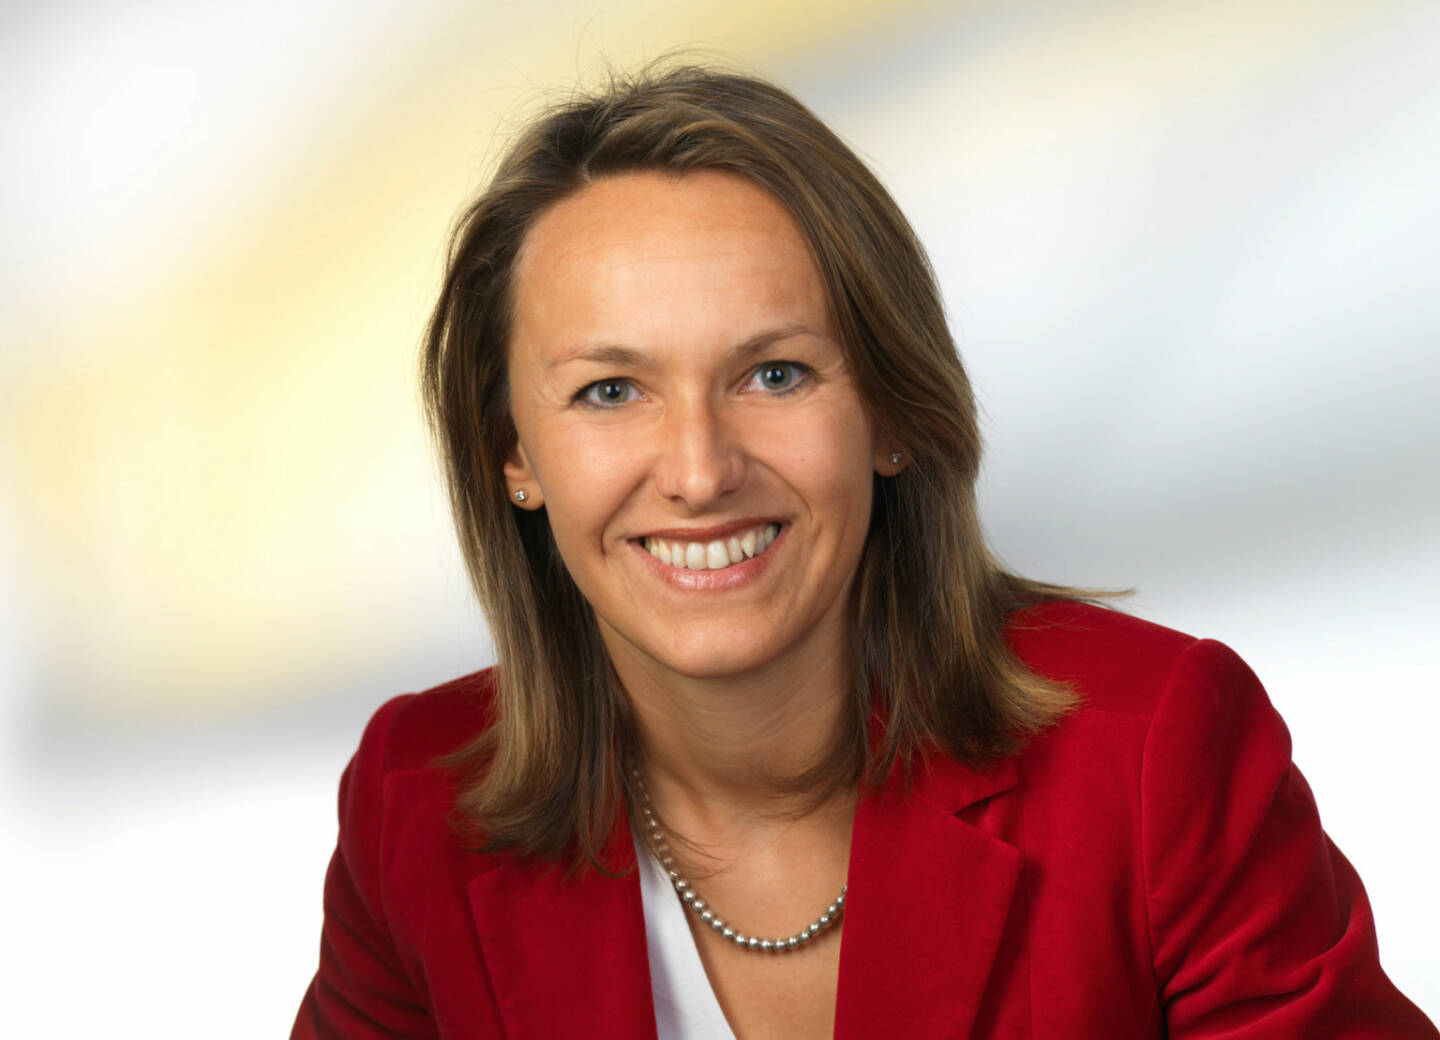 Xing hat eine neue Country Managerin für Österreich: Carmen Windhaber. Die 42-jährige Steirerin wird ab sofort die Weiterentwicklung des beruflichen Netzwerks in Österreich und das Wachstum des regionalen Ambassador-Teams vorantreiben (c) Xing